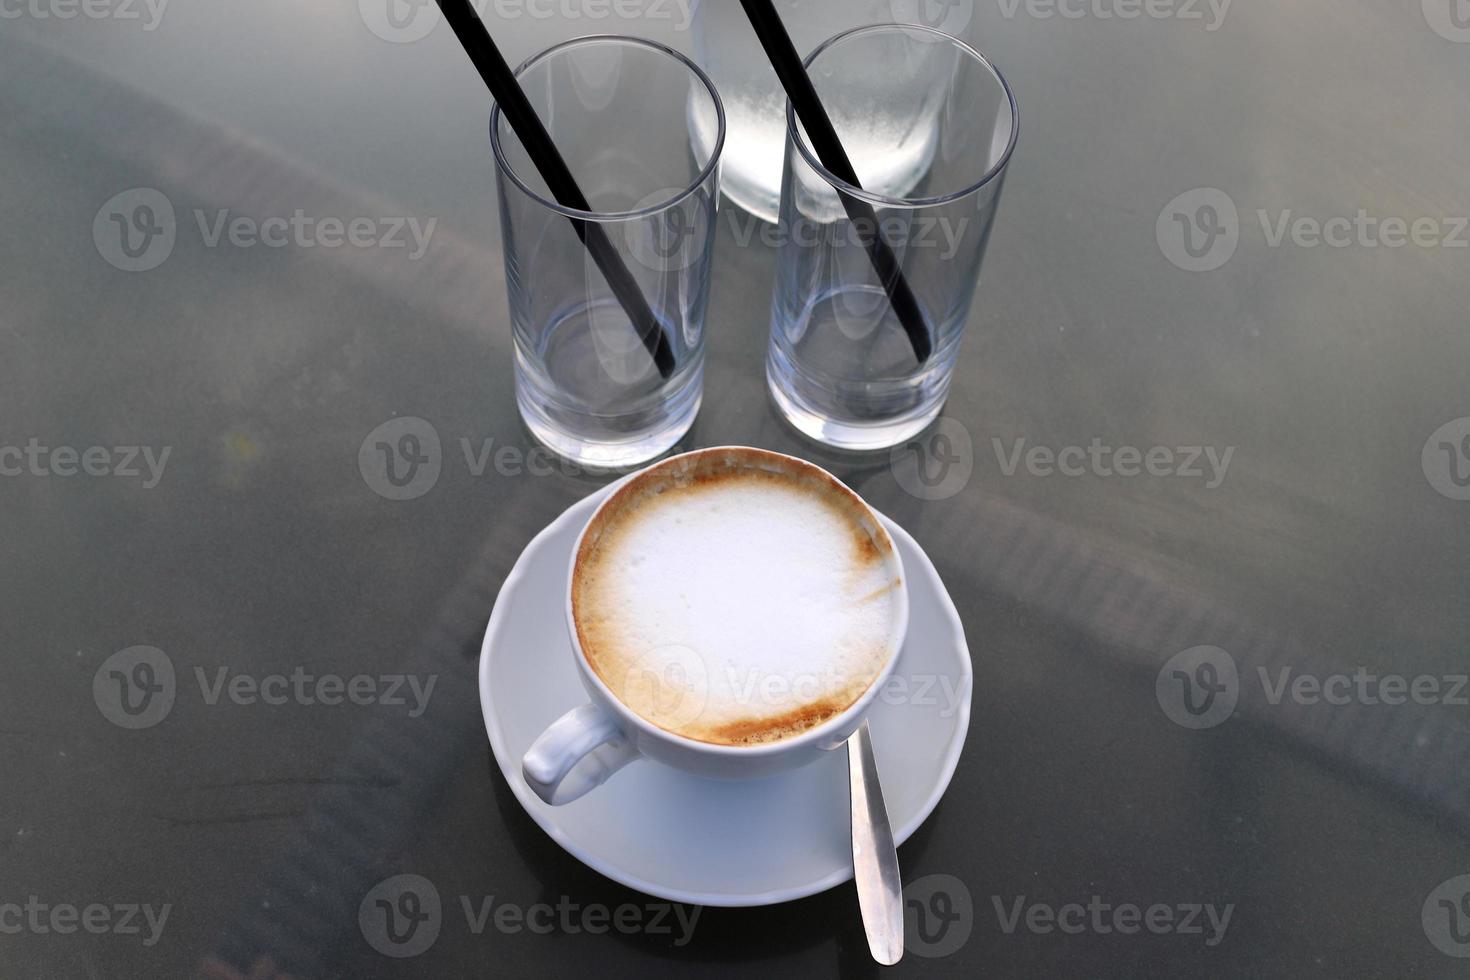 café caliente en la mesa de un restaurante. foto